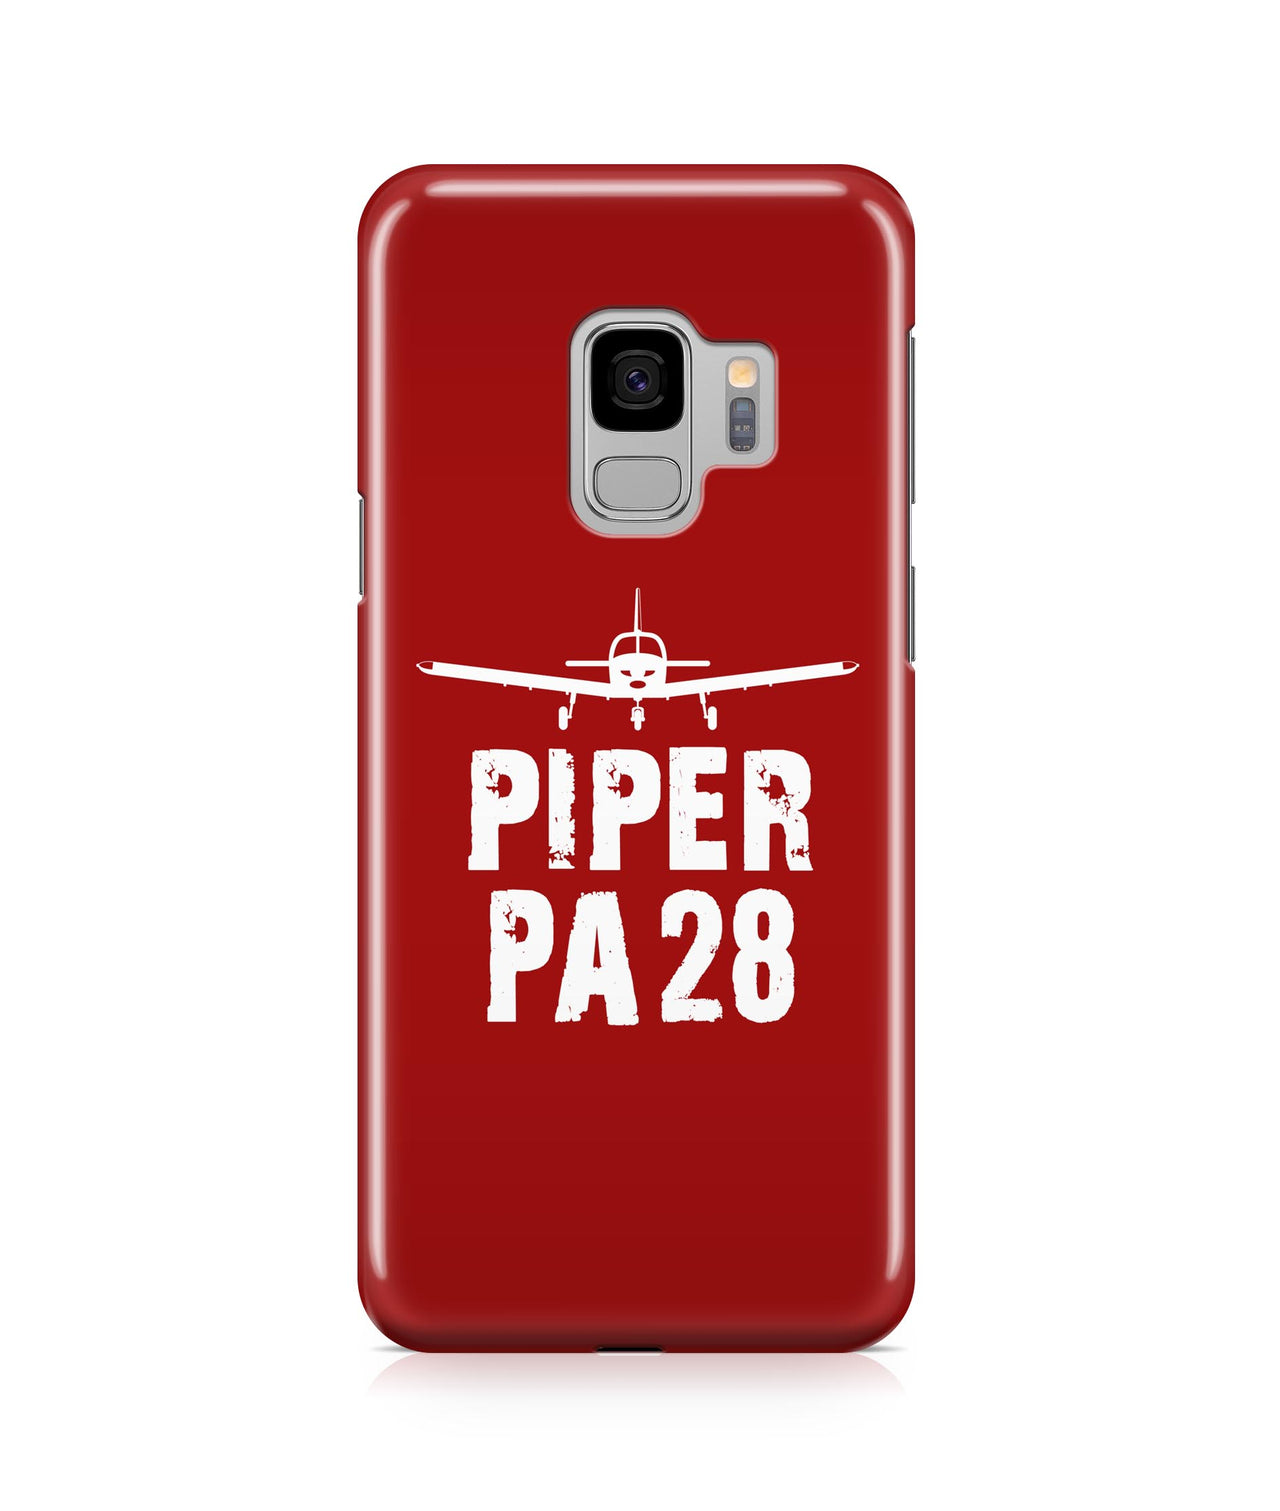 Piper PA28 Plane & Designed Samsung J Cases